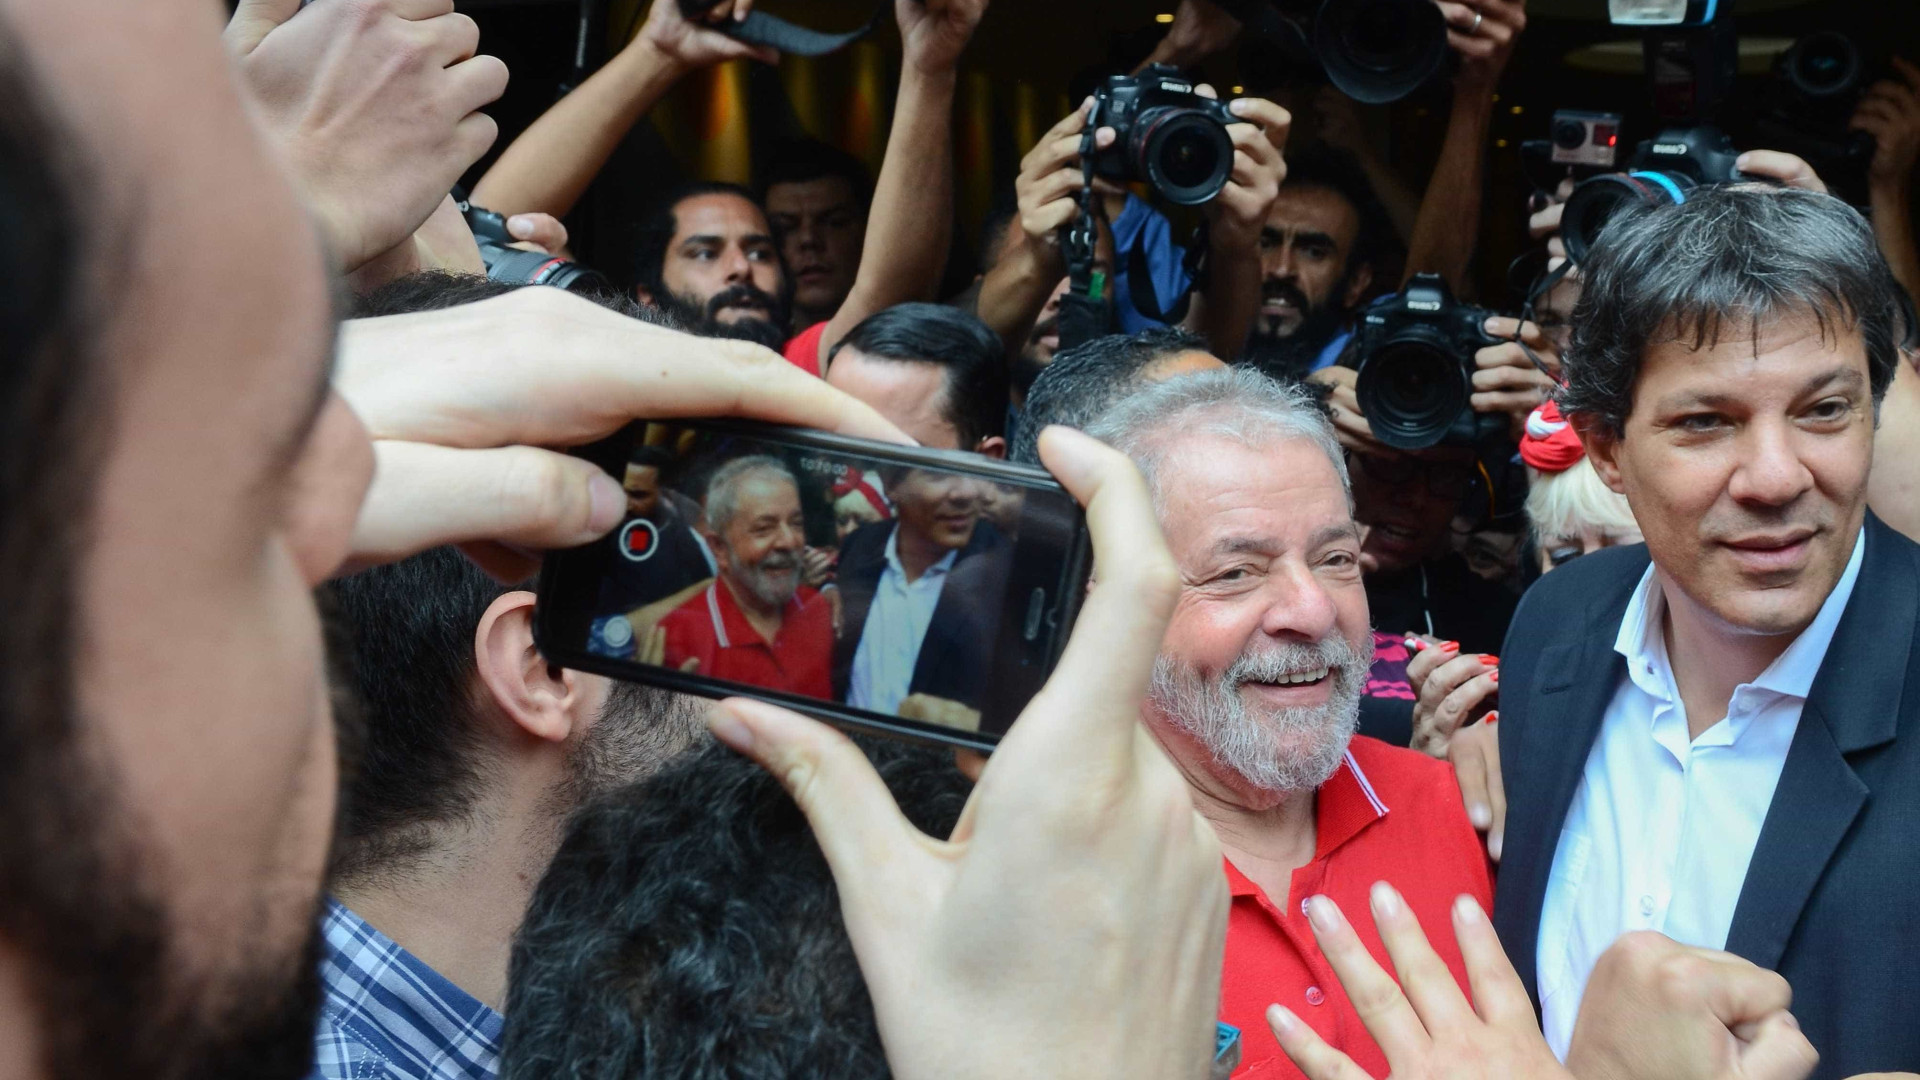 Se STF analisar Constituição, não há o que temer, diz Haddad sobre Lula